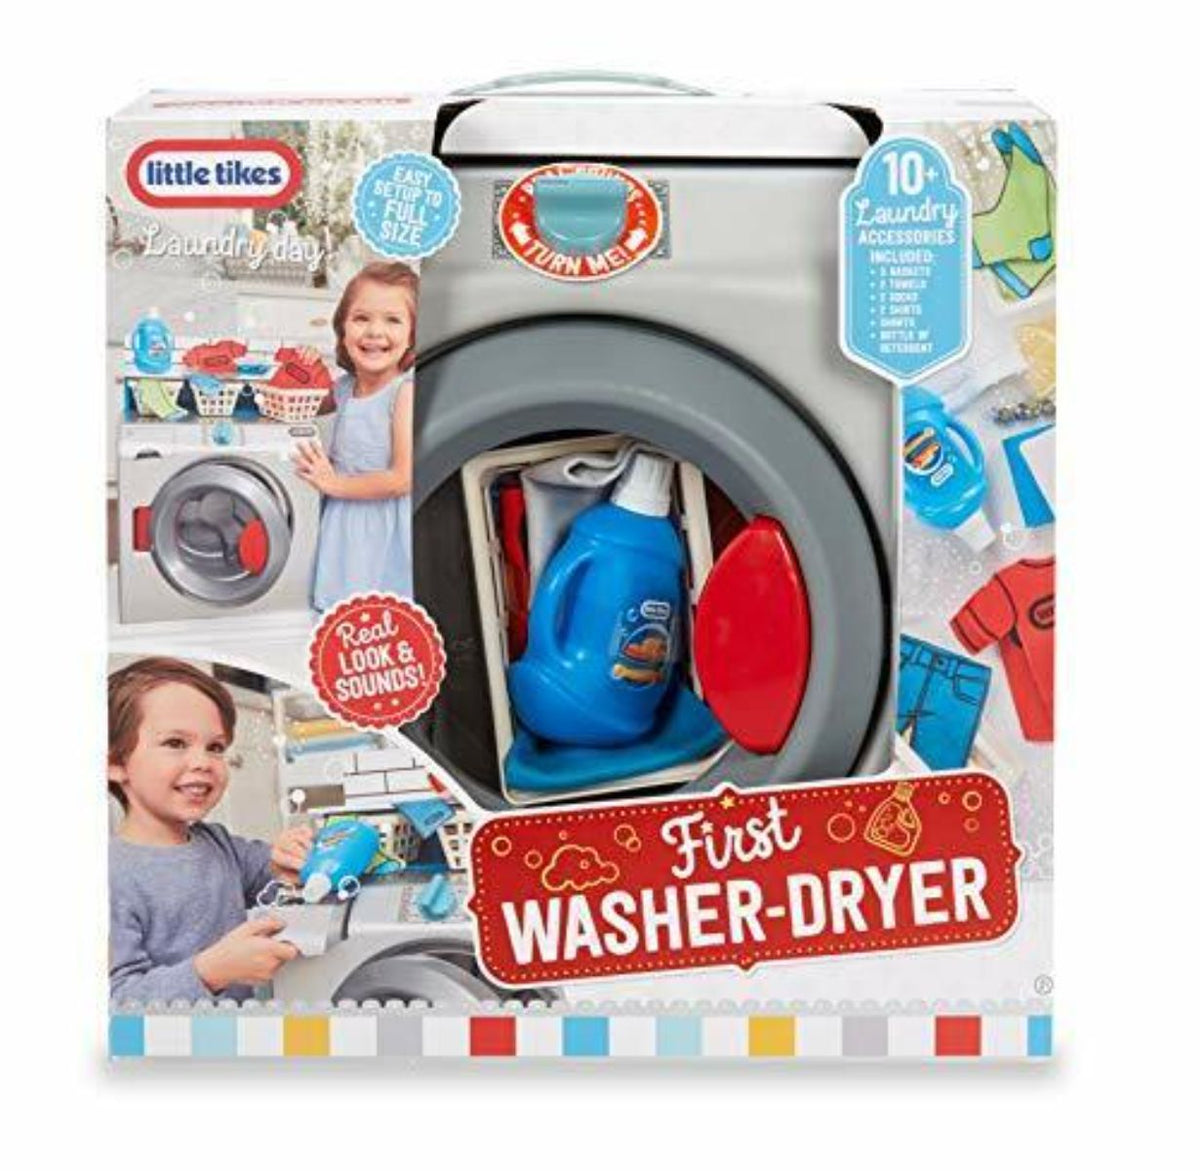 First Washer-Dryer